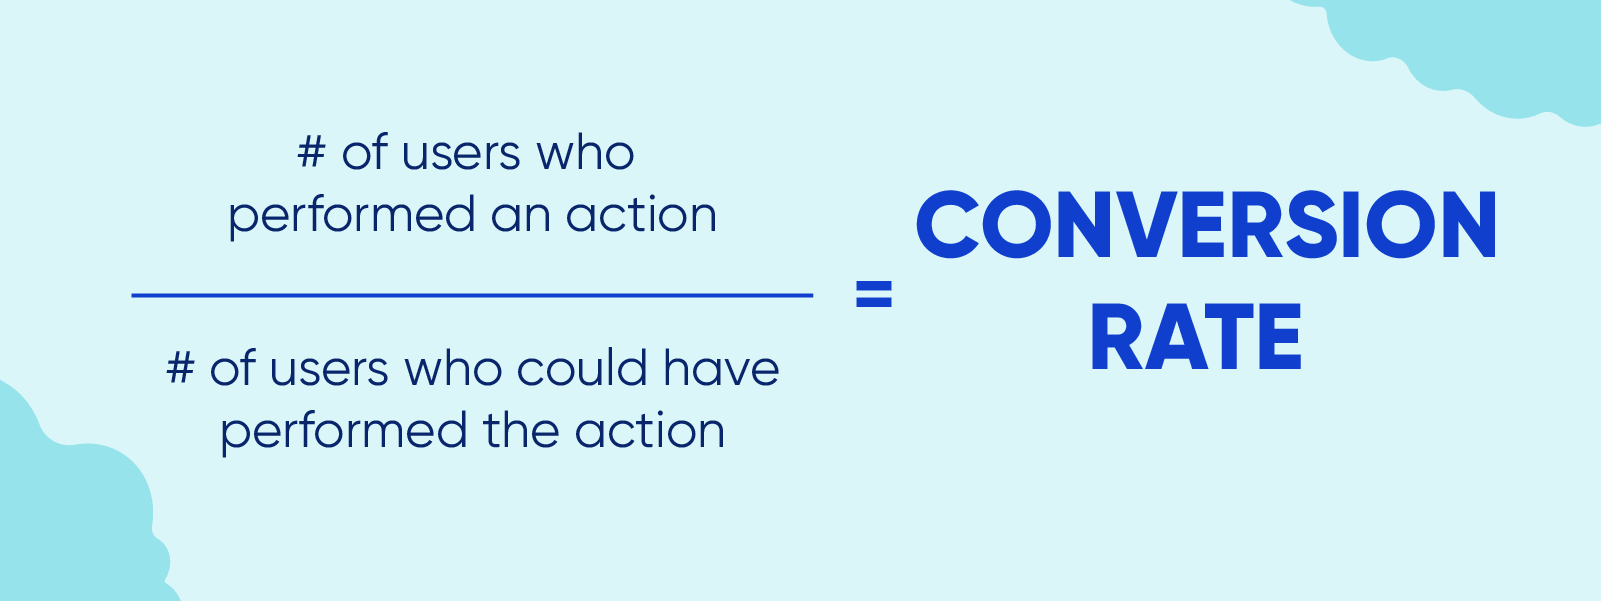 Fórmula para calcular la tasa de conversión: número de usuarios que realizaron una acción dividido por el número de usuarios que podrían haber realizado la acción.